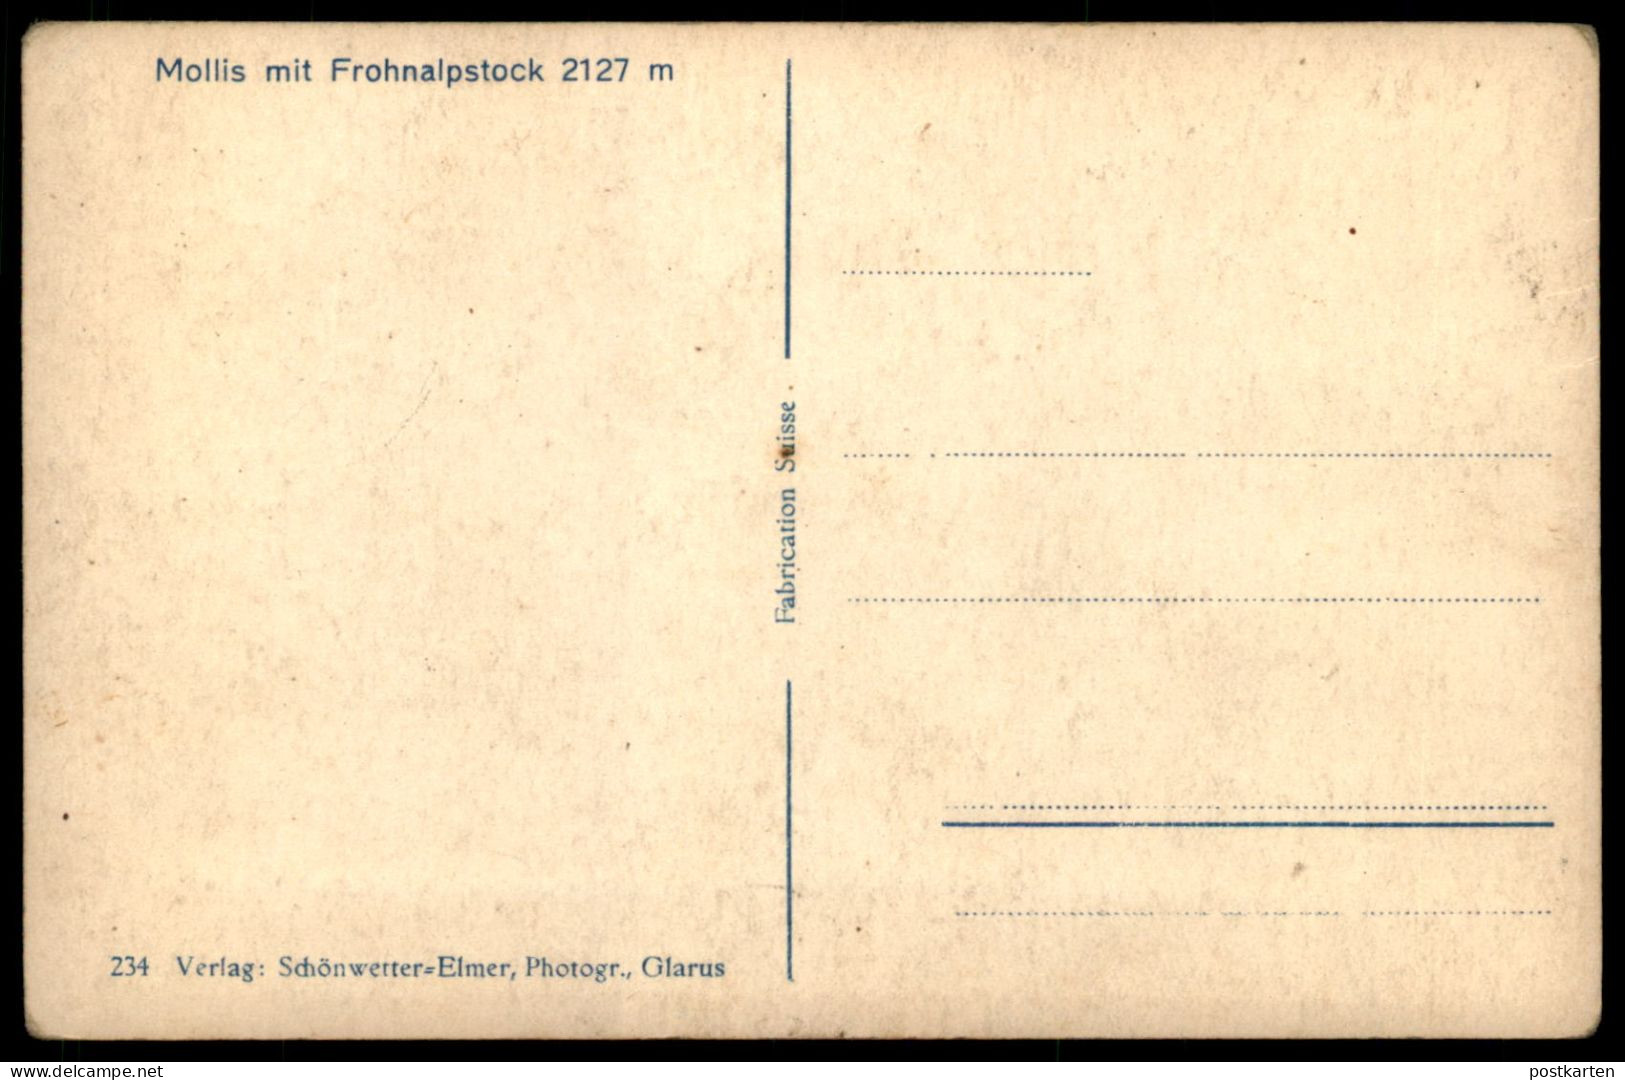 ALTE POSTKARTE MOLLIS GEGEN FROHNALPSTOCK PANORAMA 2127 METER GLARUS SCHWEIZ SUISSE Cpa Postcard Ansichtskarte AK - Mollis